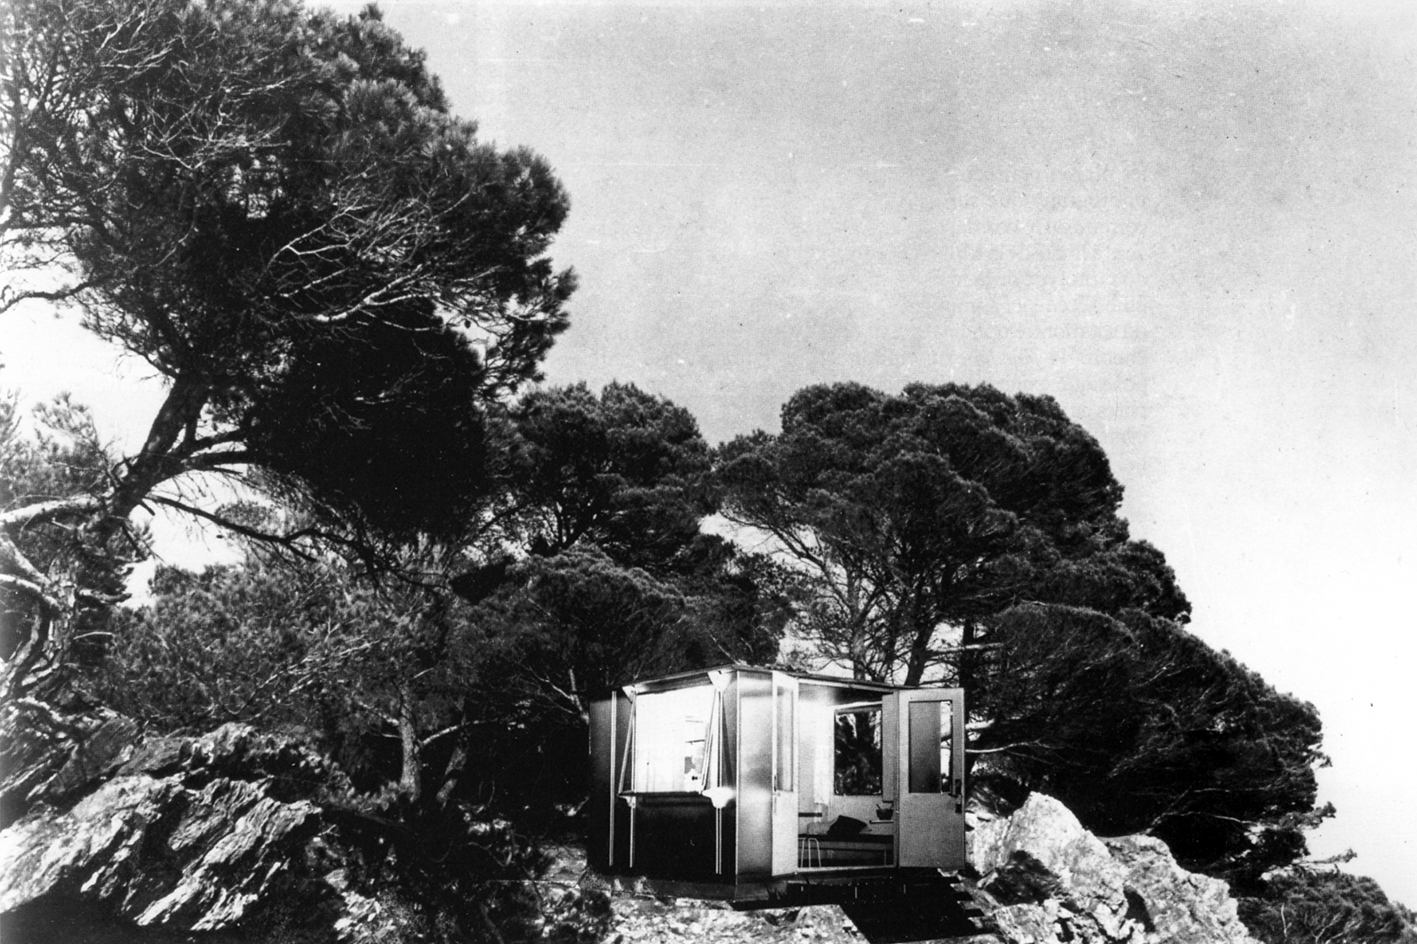 Maison de week-end BLPS en acier (E. Beaudouin et M. Lods, arch., Ateliers Jean Prouvé, concepteur, Les Forges de Strasbourg, constructeur), prototype 1937-1938.